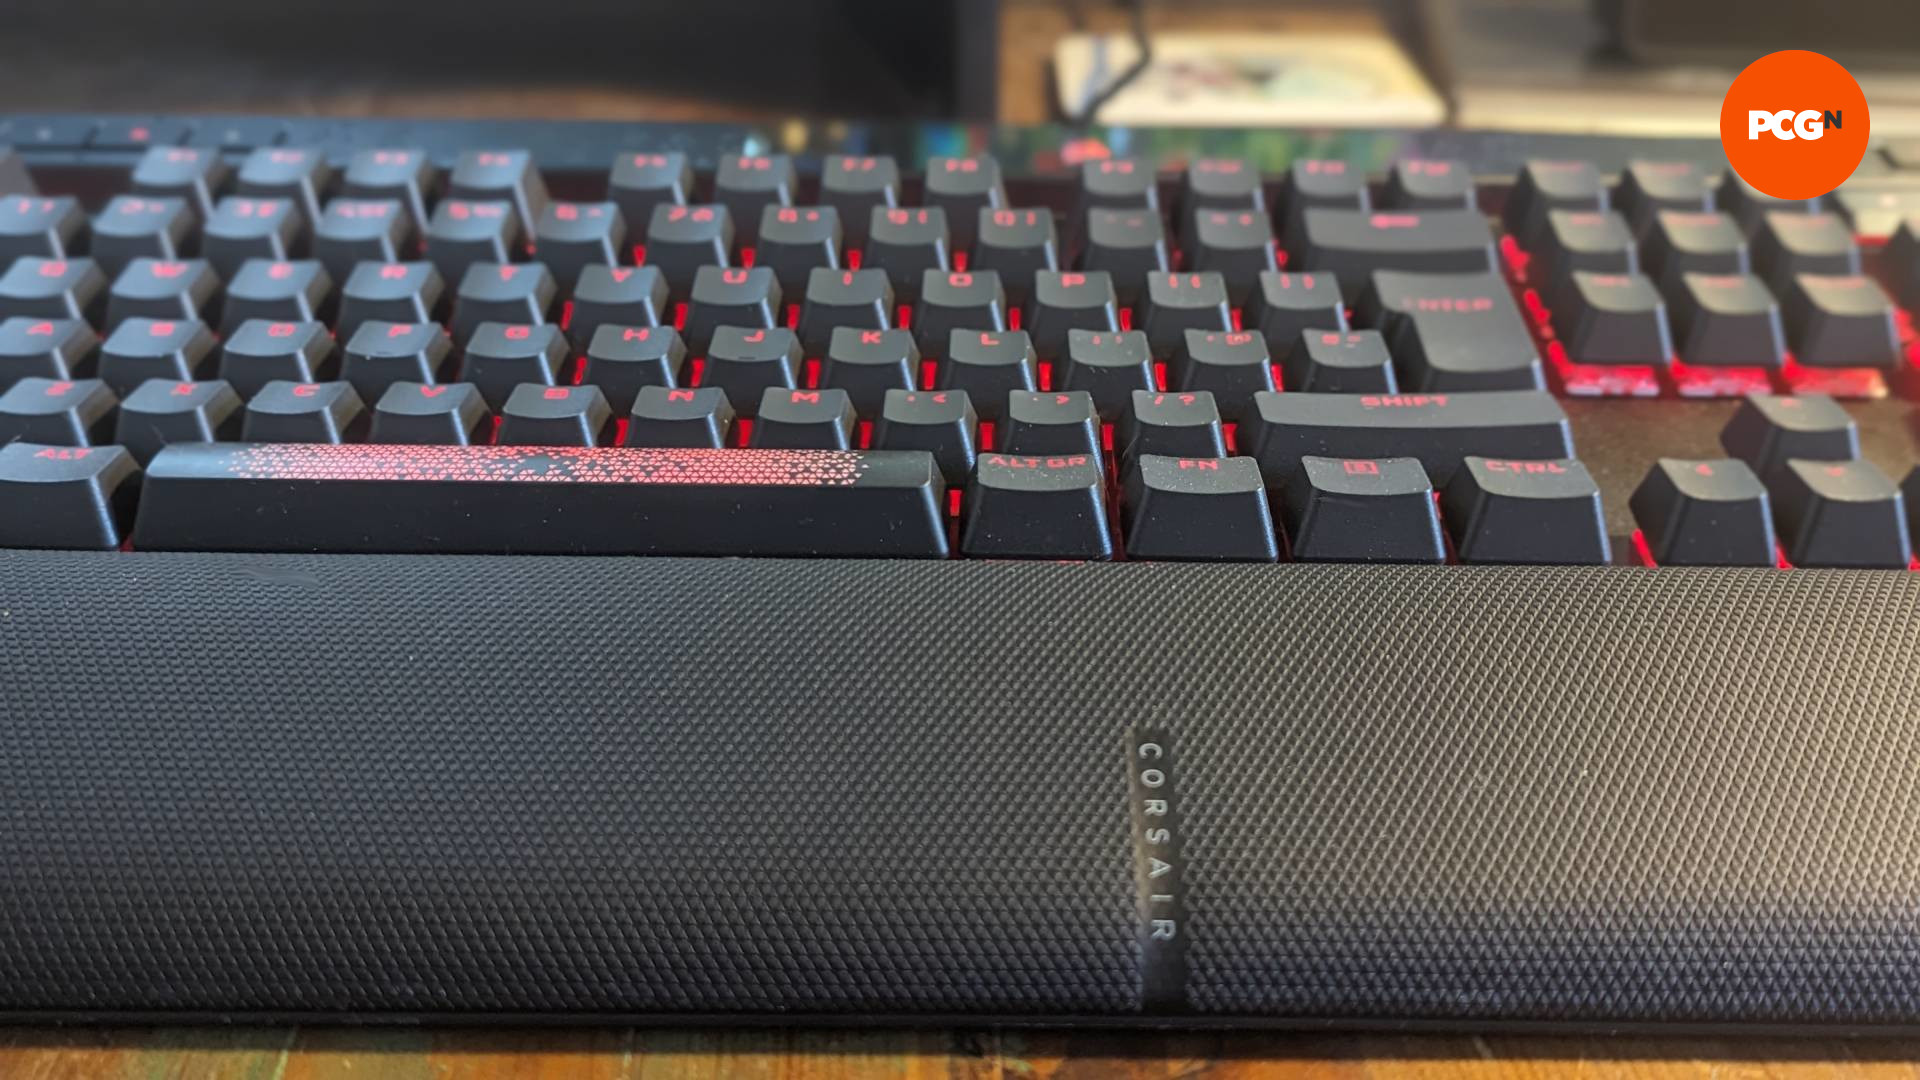 Une vue du clavier de jeu Corsair K70 Max depuis son repose-poignet, ses touches rougeoyantes